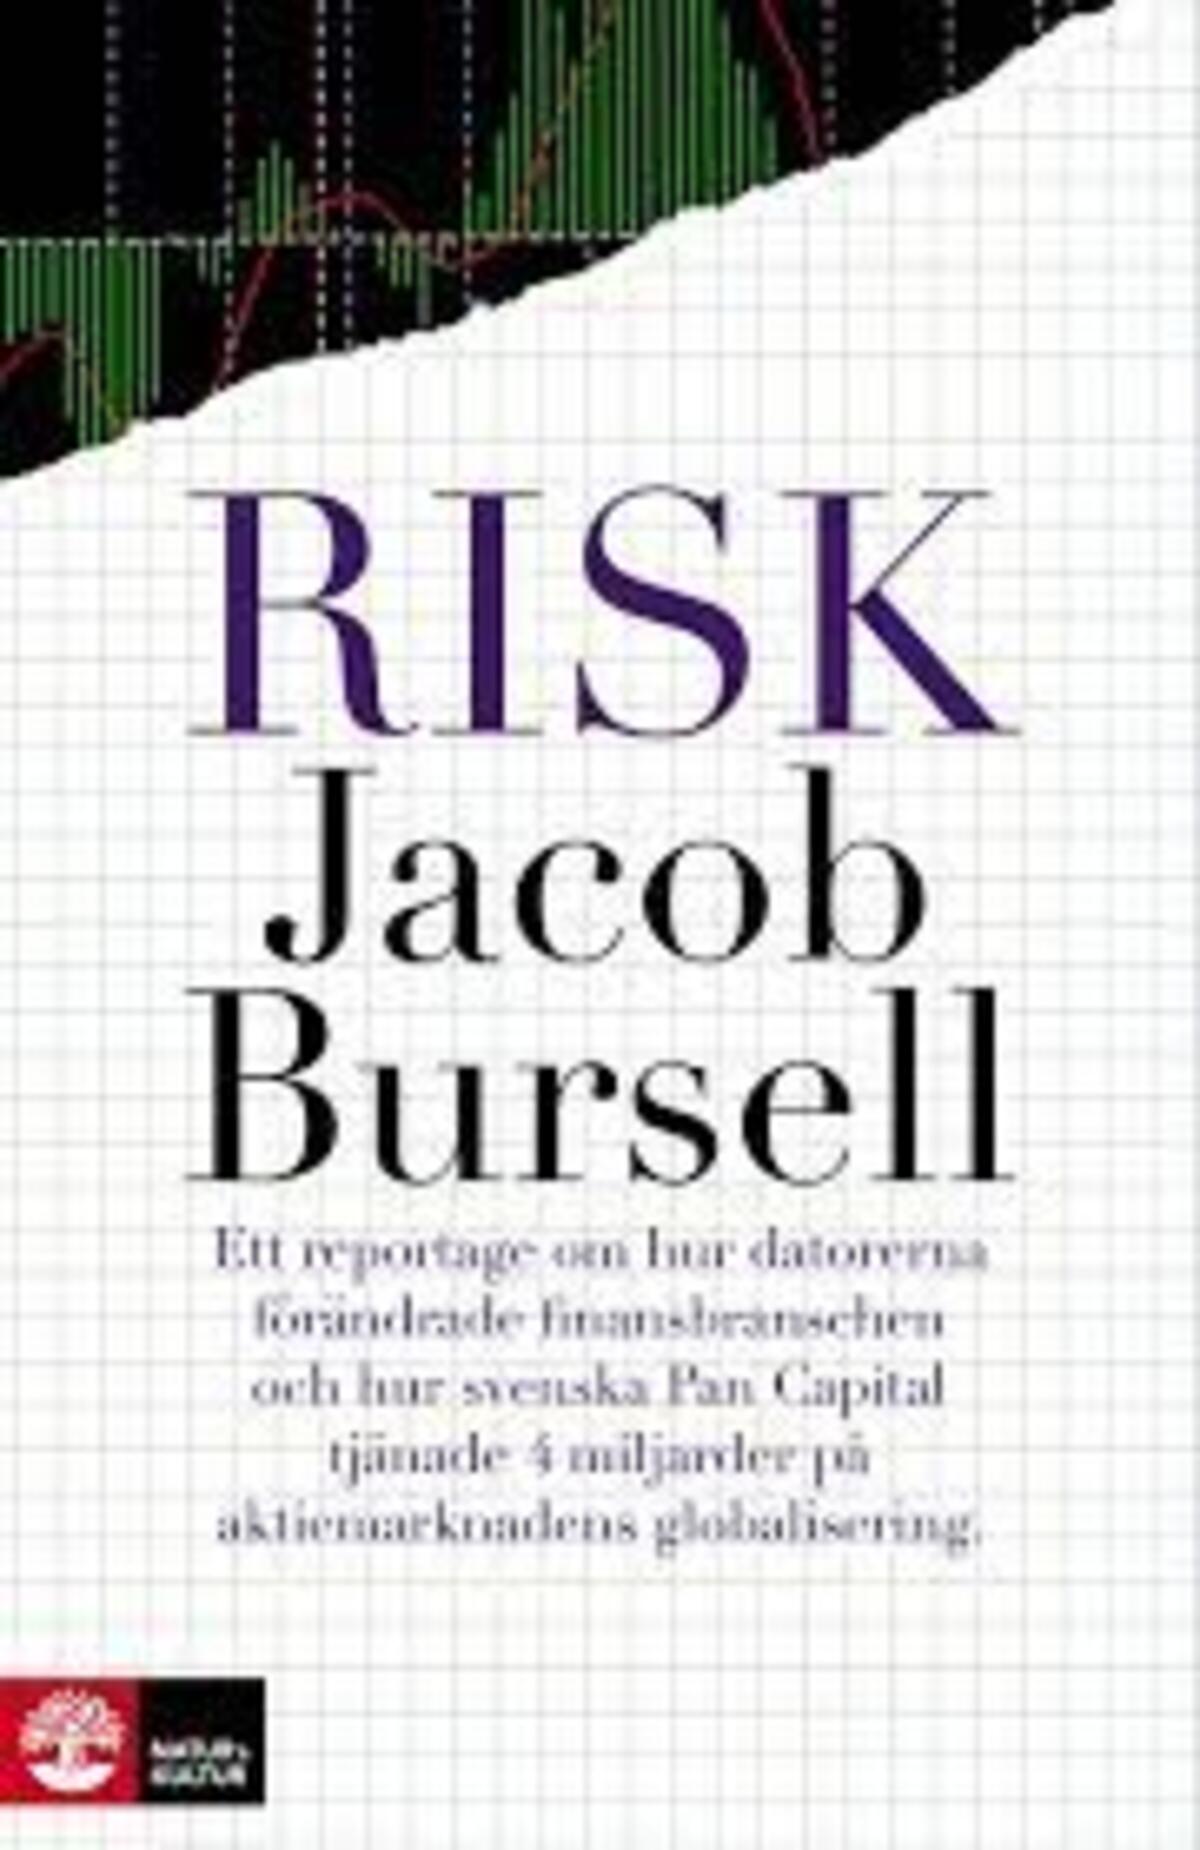 Ett reportage om hur datorerna förändrade finansbranschen och hur svenska Pan Capital tjänade 4 miljarder på aktiemarknadens globalisering.